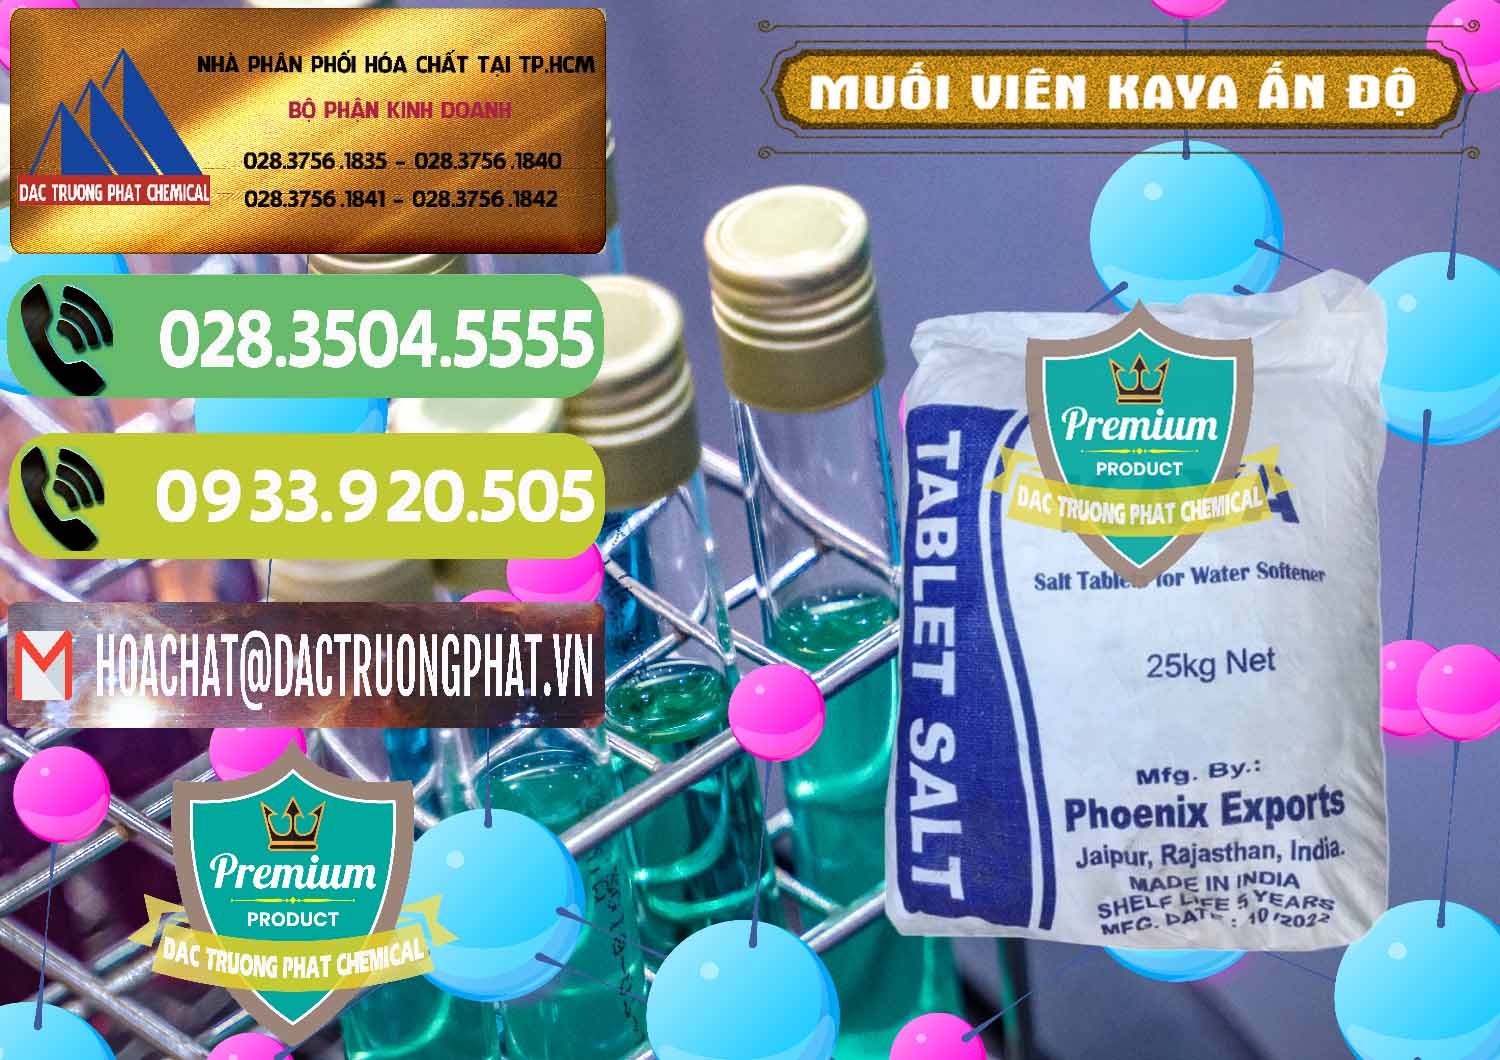 Cty chuyên kinh doanh - bán Muối NaCL – Sodium Chloride Dạng Viên Tablets Kaya Ấn Độ India - 0368 - Nơi chuyên cung cấp - nhập khẩu hóa chất tại TP.HCM - hoachatmientay.vn